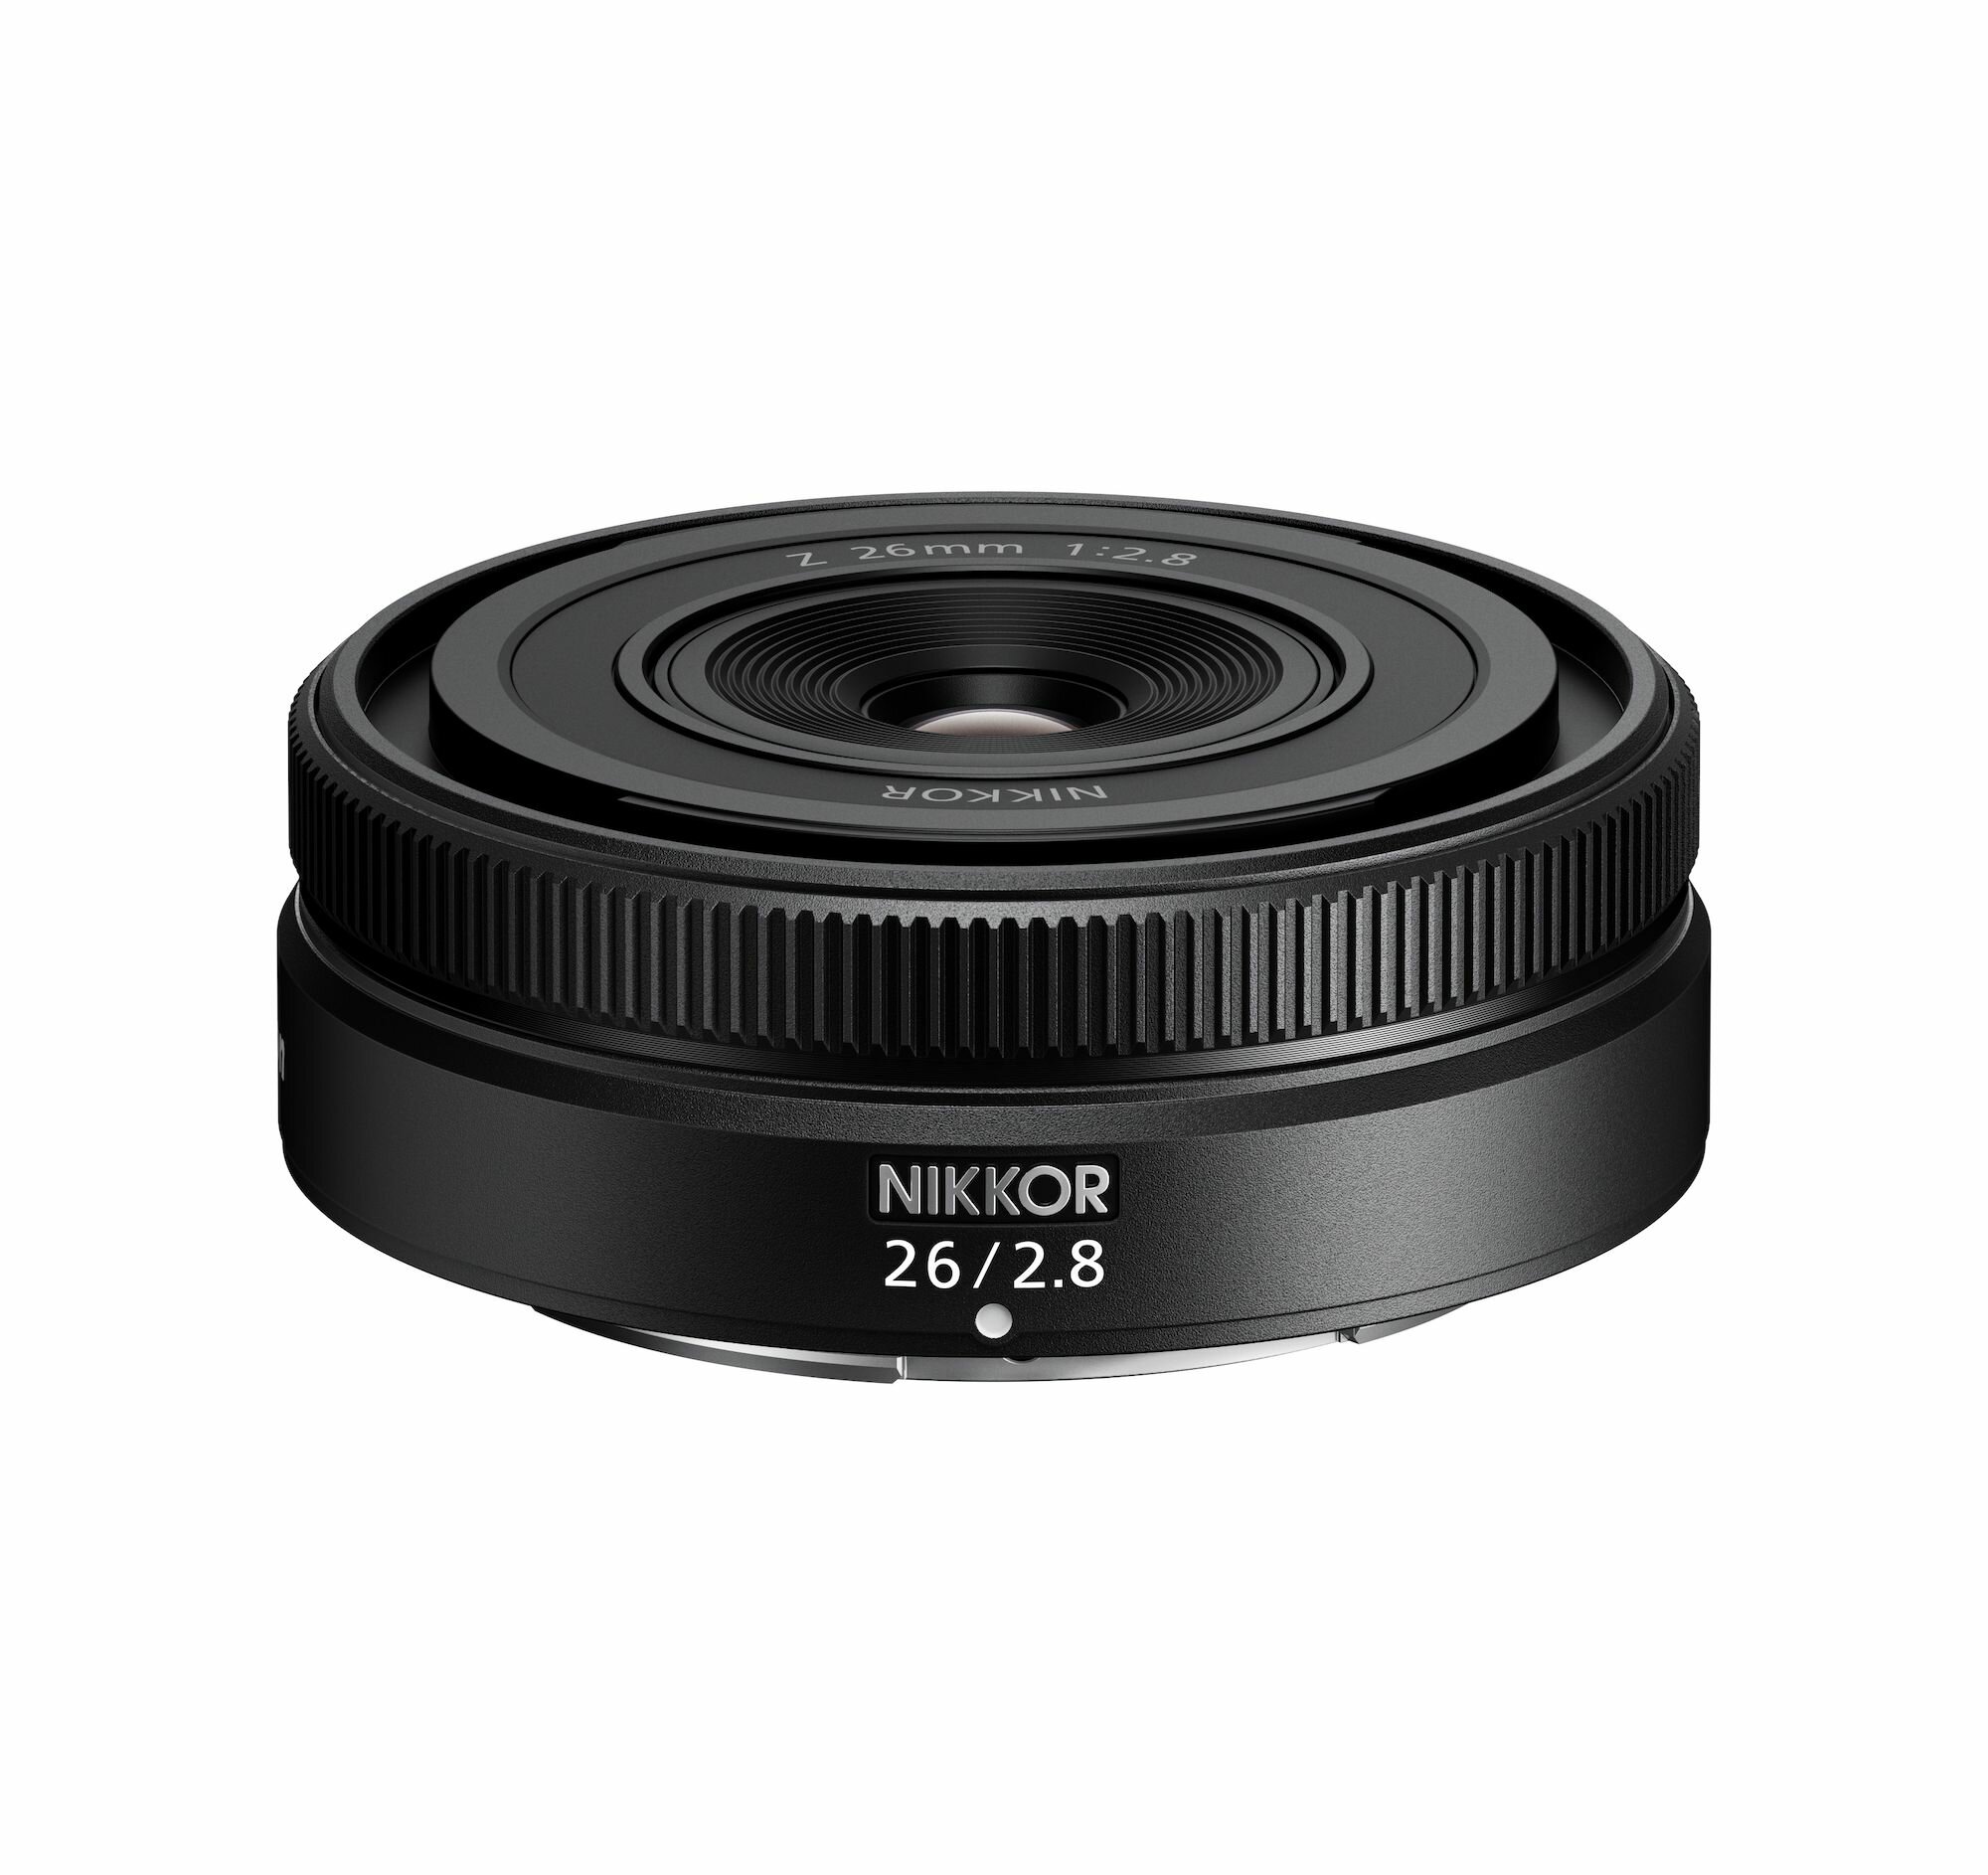 Объектив Nikon Z 26mm f/2.8